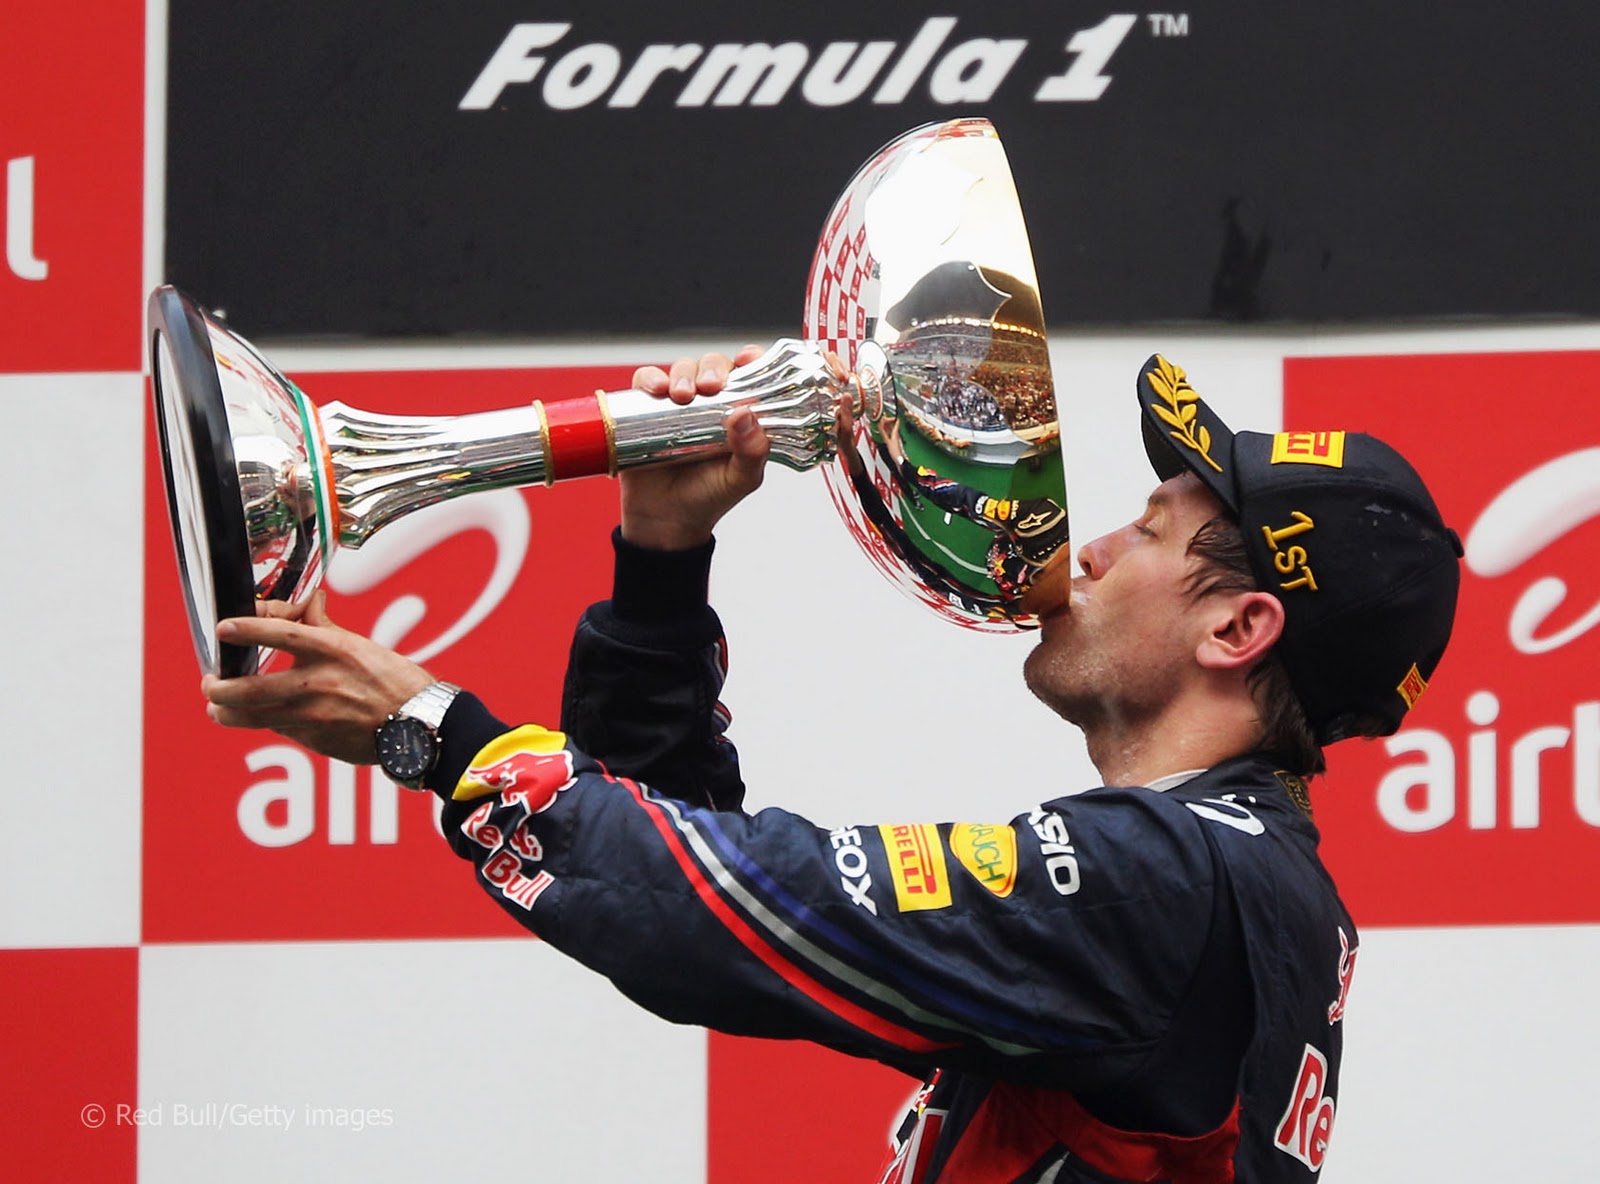 http://3.bp.blogspot.com/-K5sWhrmoOzQ/TrD3g_YfwkI/AAAAAAAABsw/mNuRw3nj9eo/s1600/Red-bull-Sebastian-Vettel-wins-Indian-Grand-prix.jpg